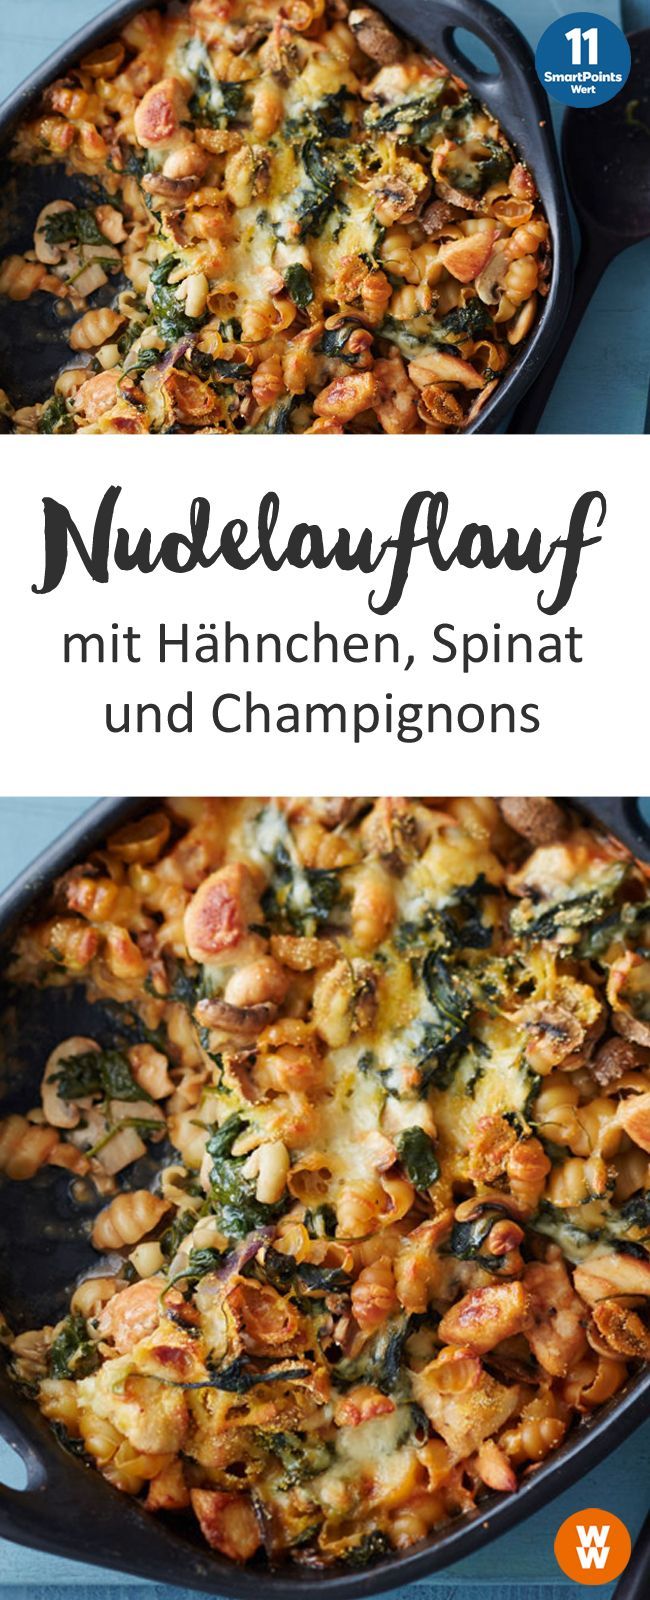 Nudelauflauf mit Hähnchen, Spinat und Champignons | Hauptgericht, Mittagessen, Abendessen, Nudeln, Pasta